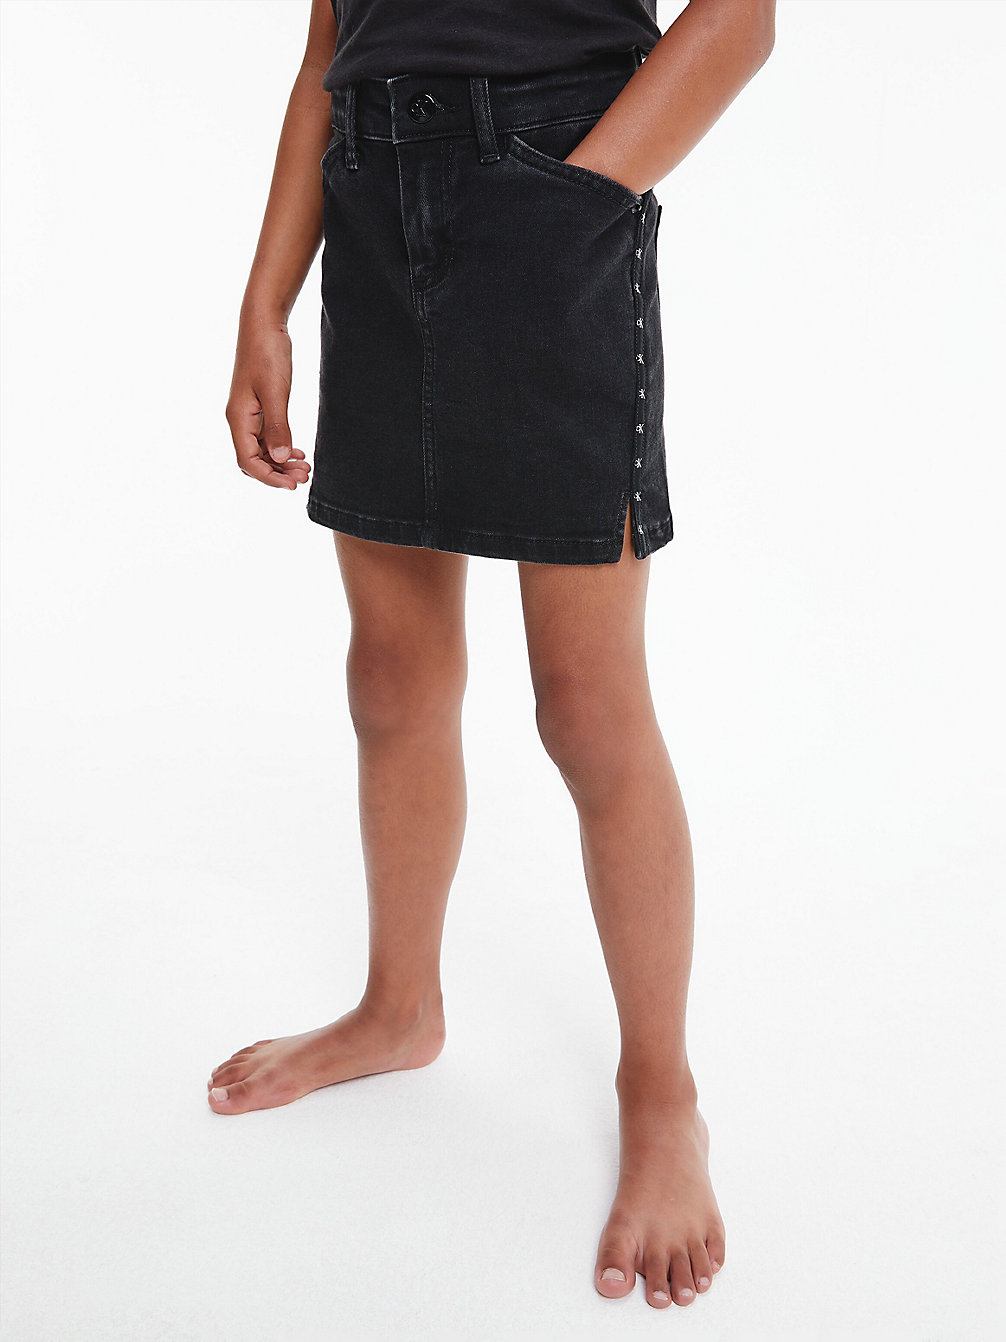 WASHED BLACK Straight Denim Mini Skirt undefined girls Calvin Klein